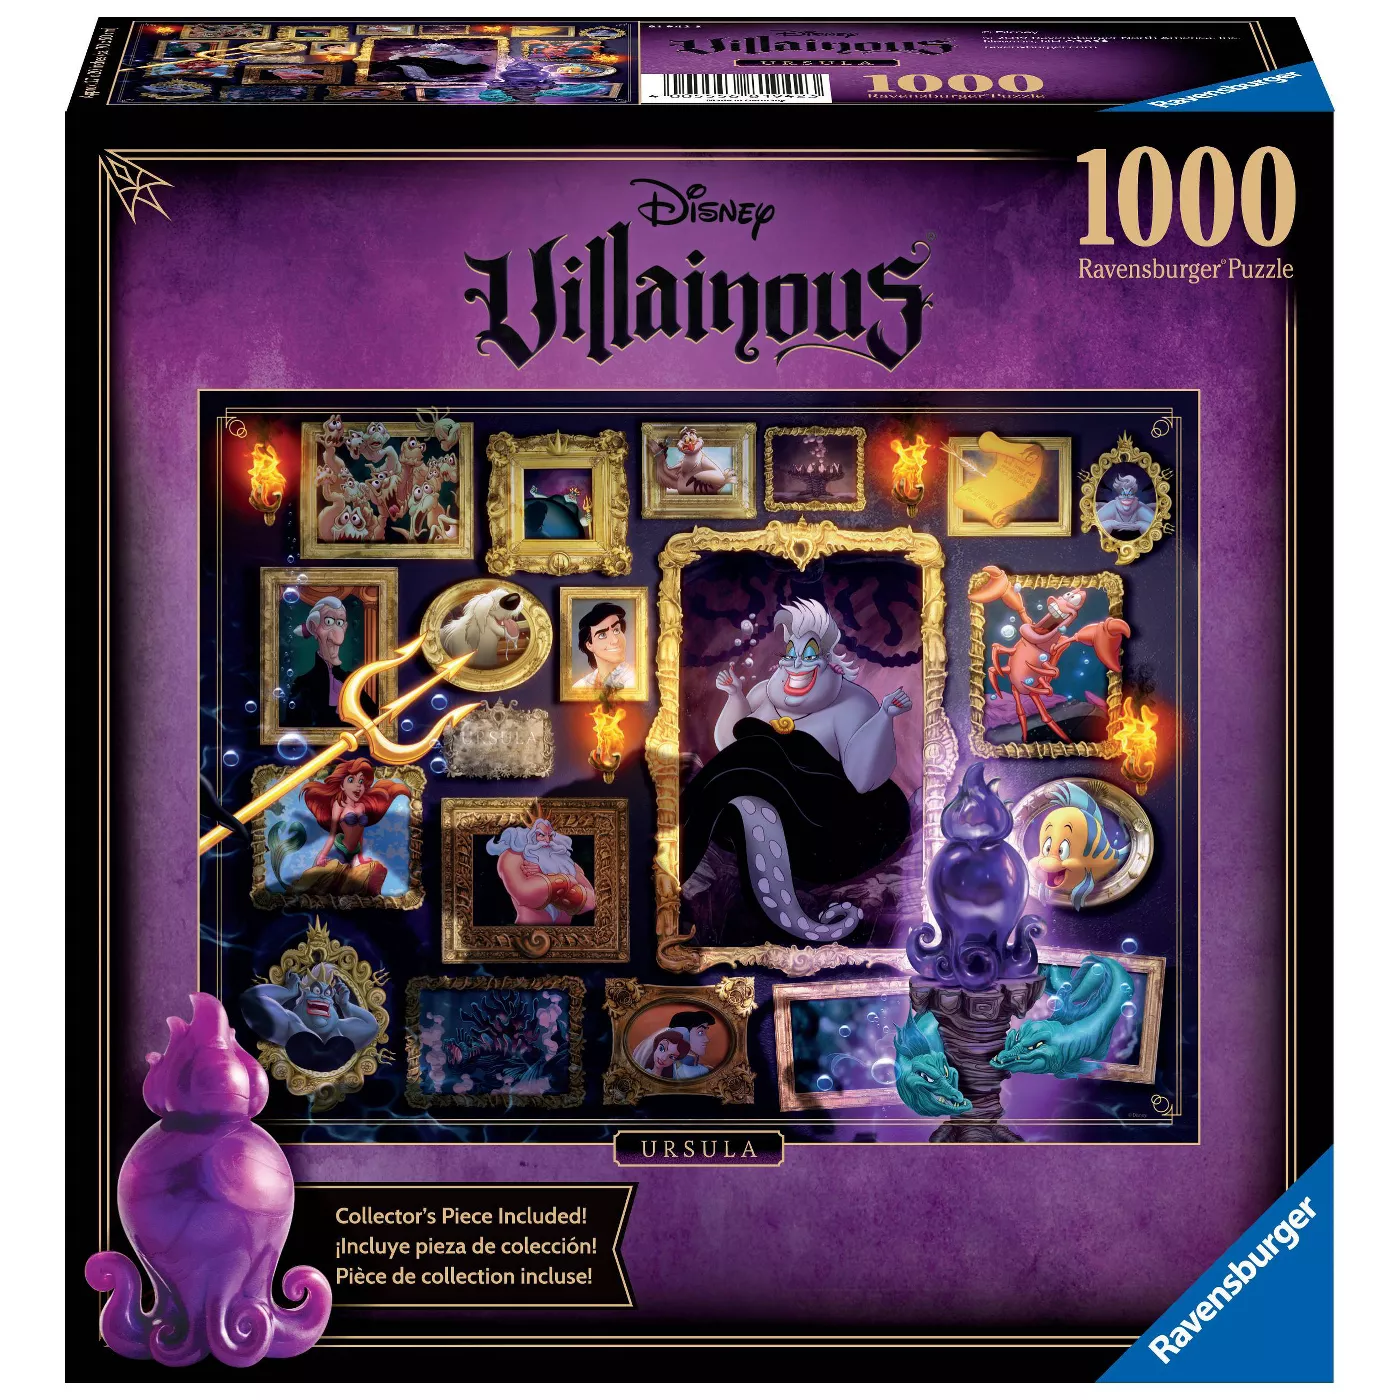 Ravensburger Disney Villainous Ursula 1000 Piece Puzzle